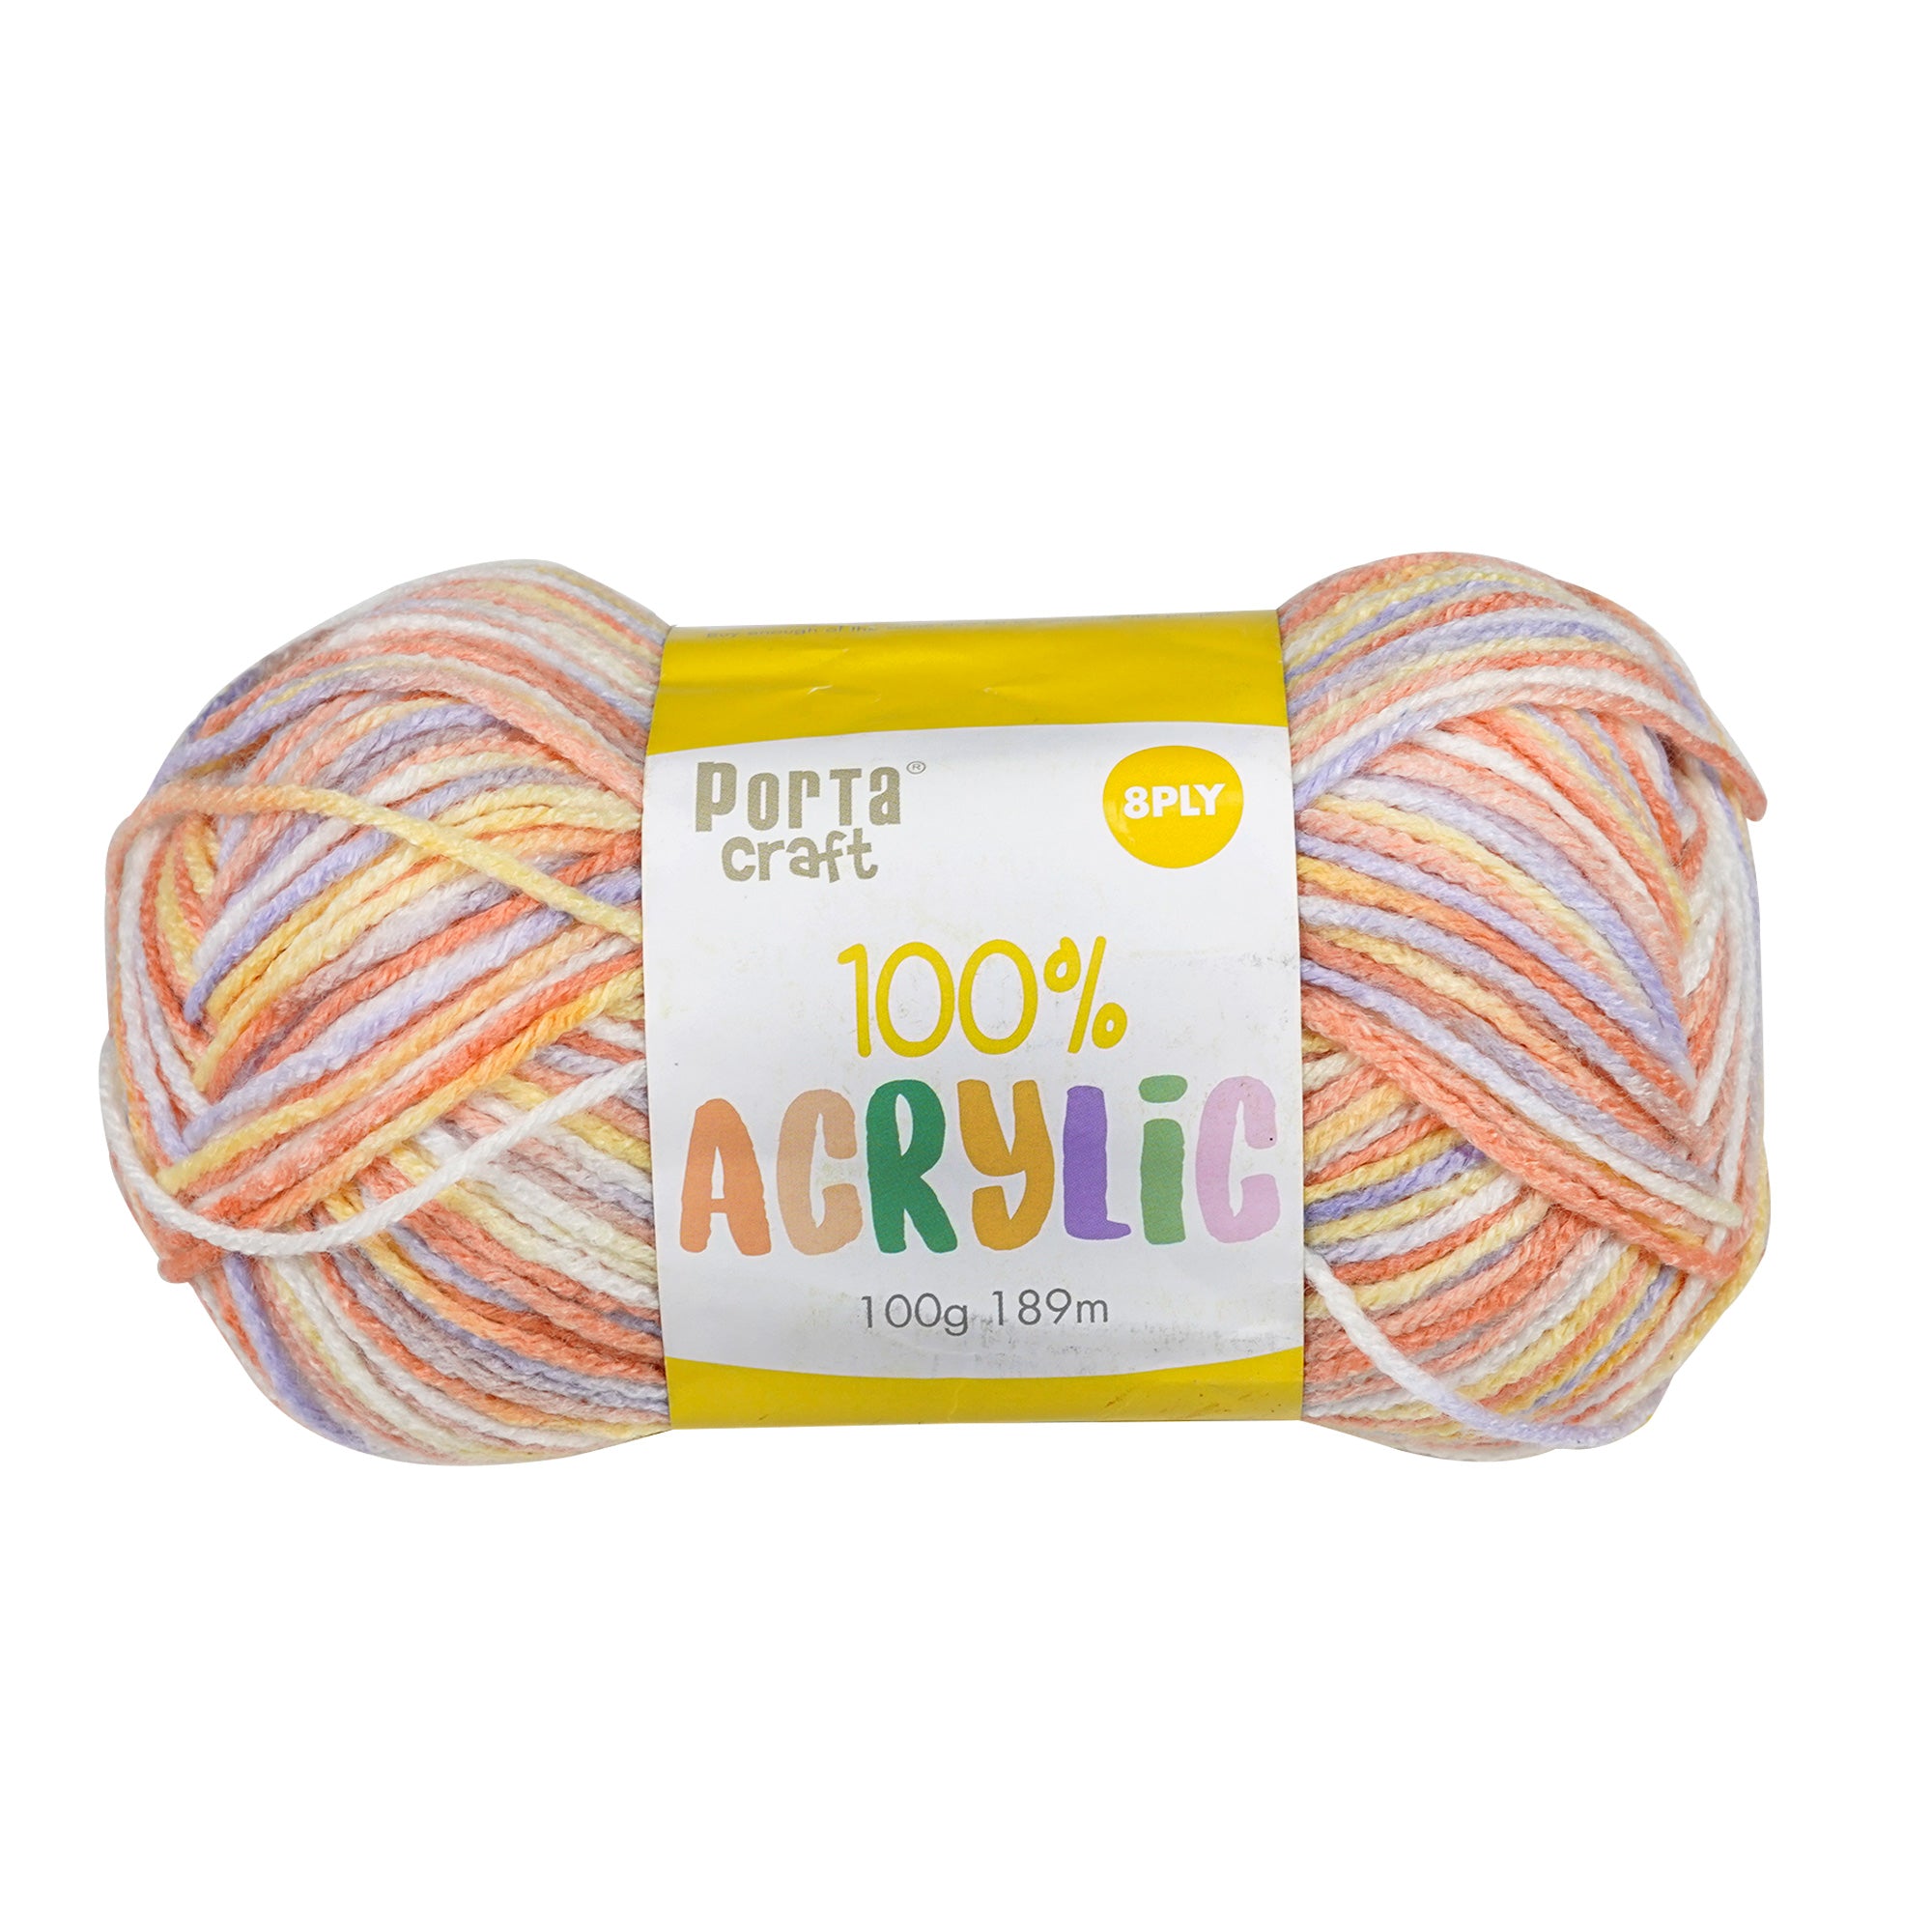 Porta Craft Acrylic Yarn 100% 100Gm 189M 8Ply Multi Applejack